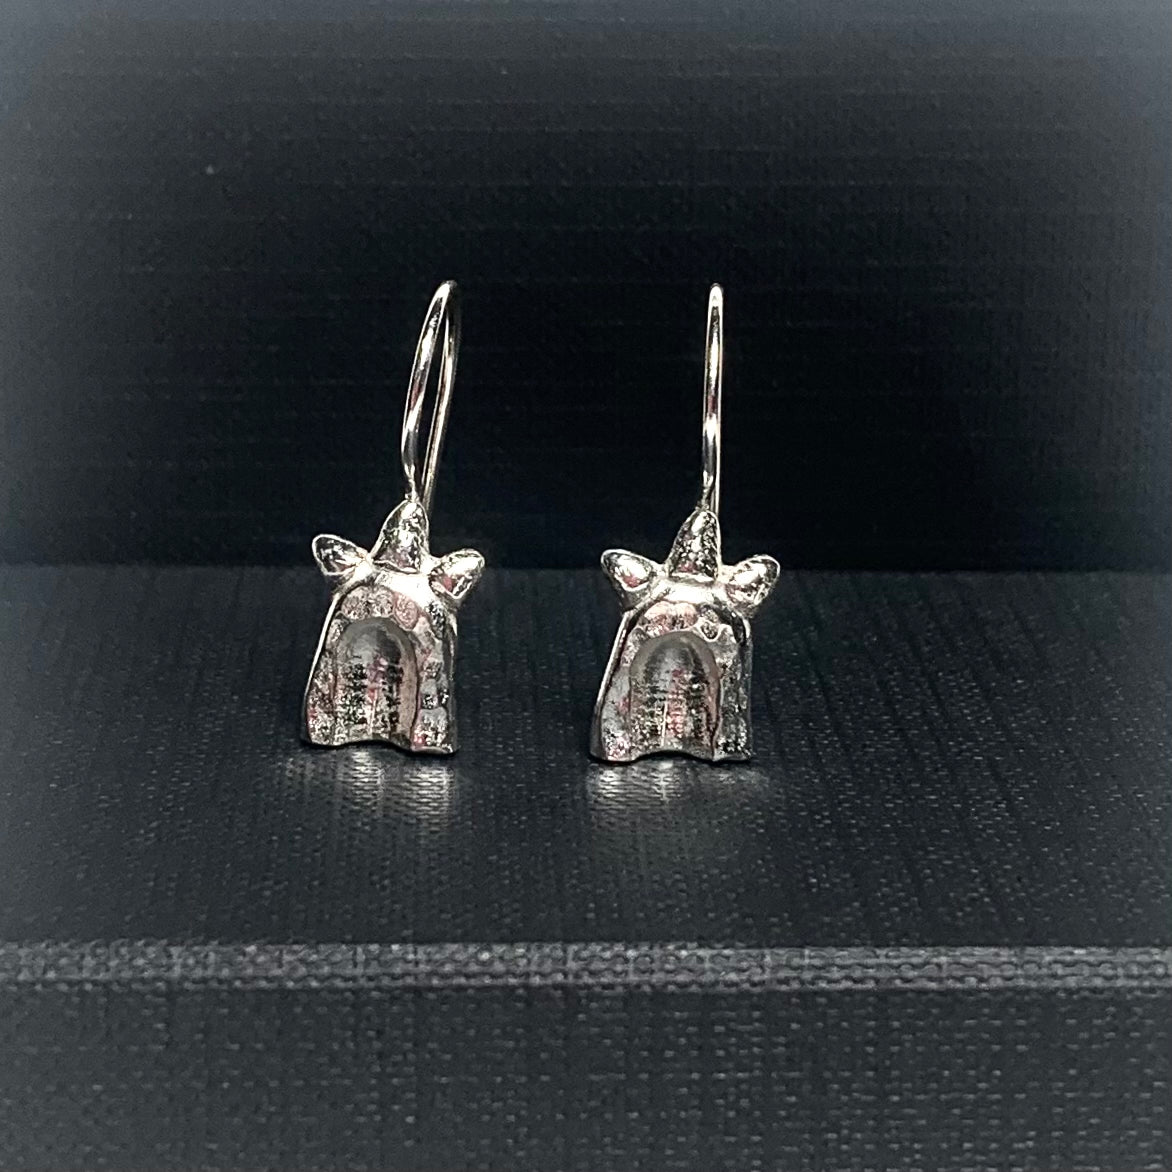 Portal earrings